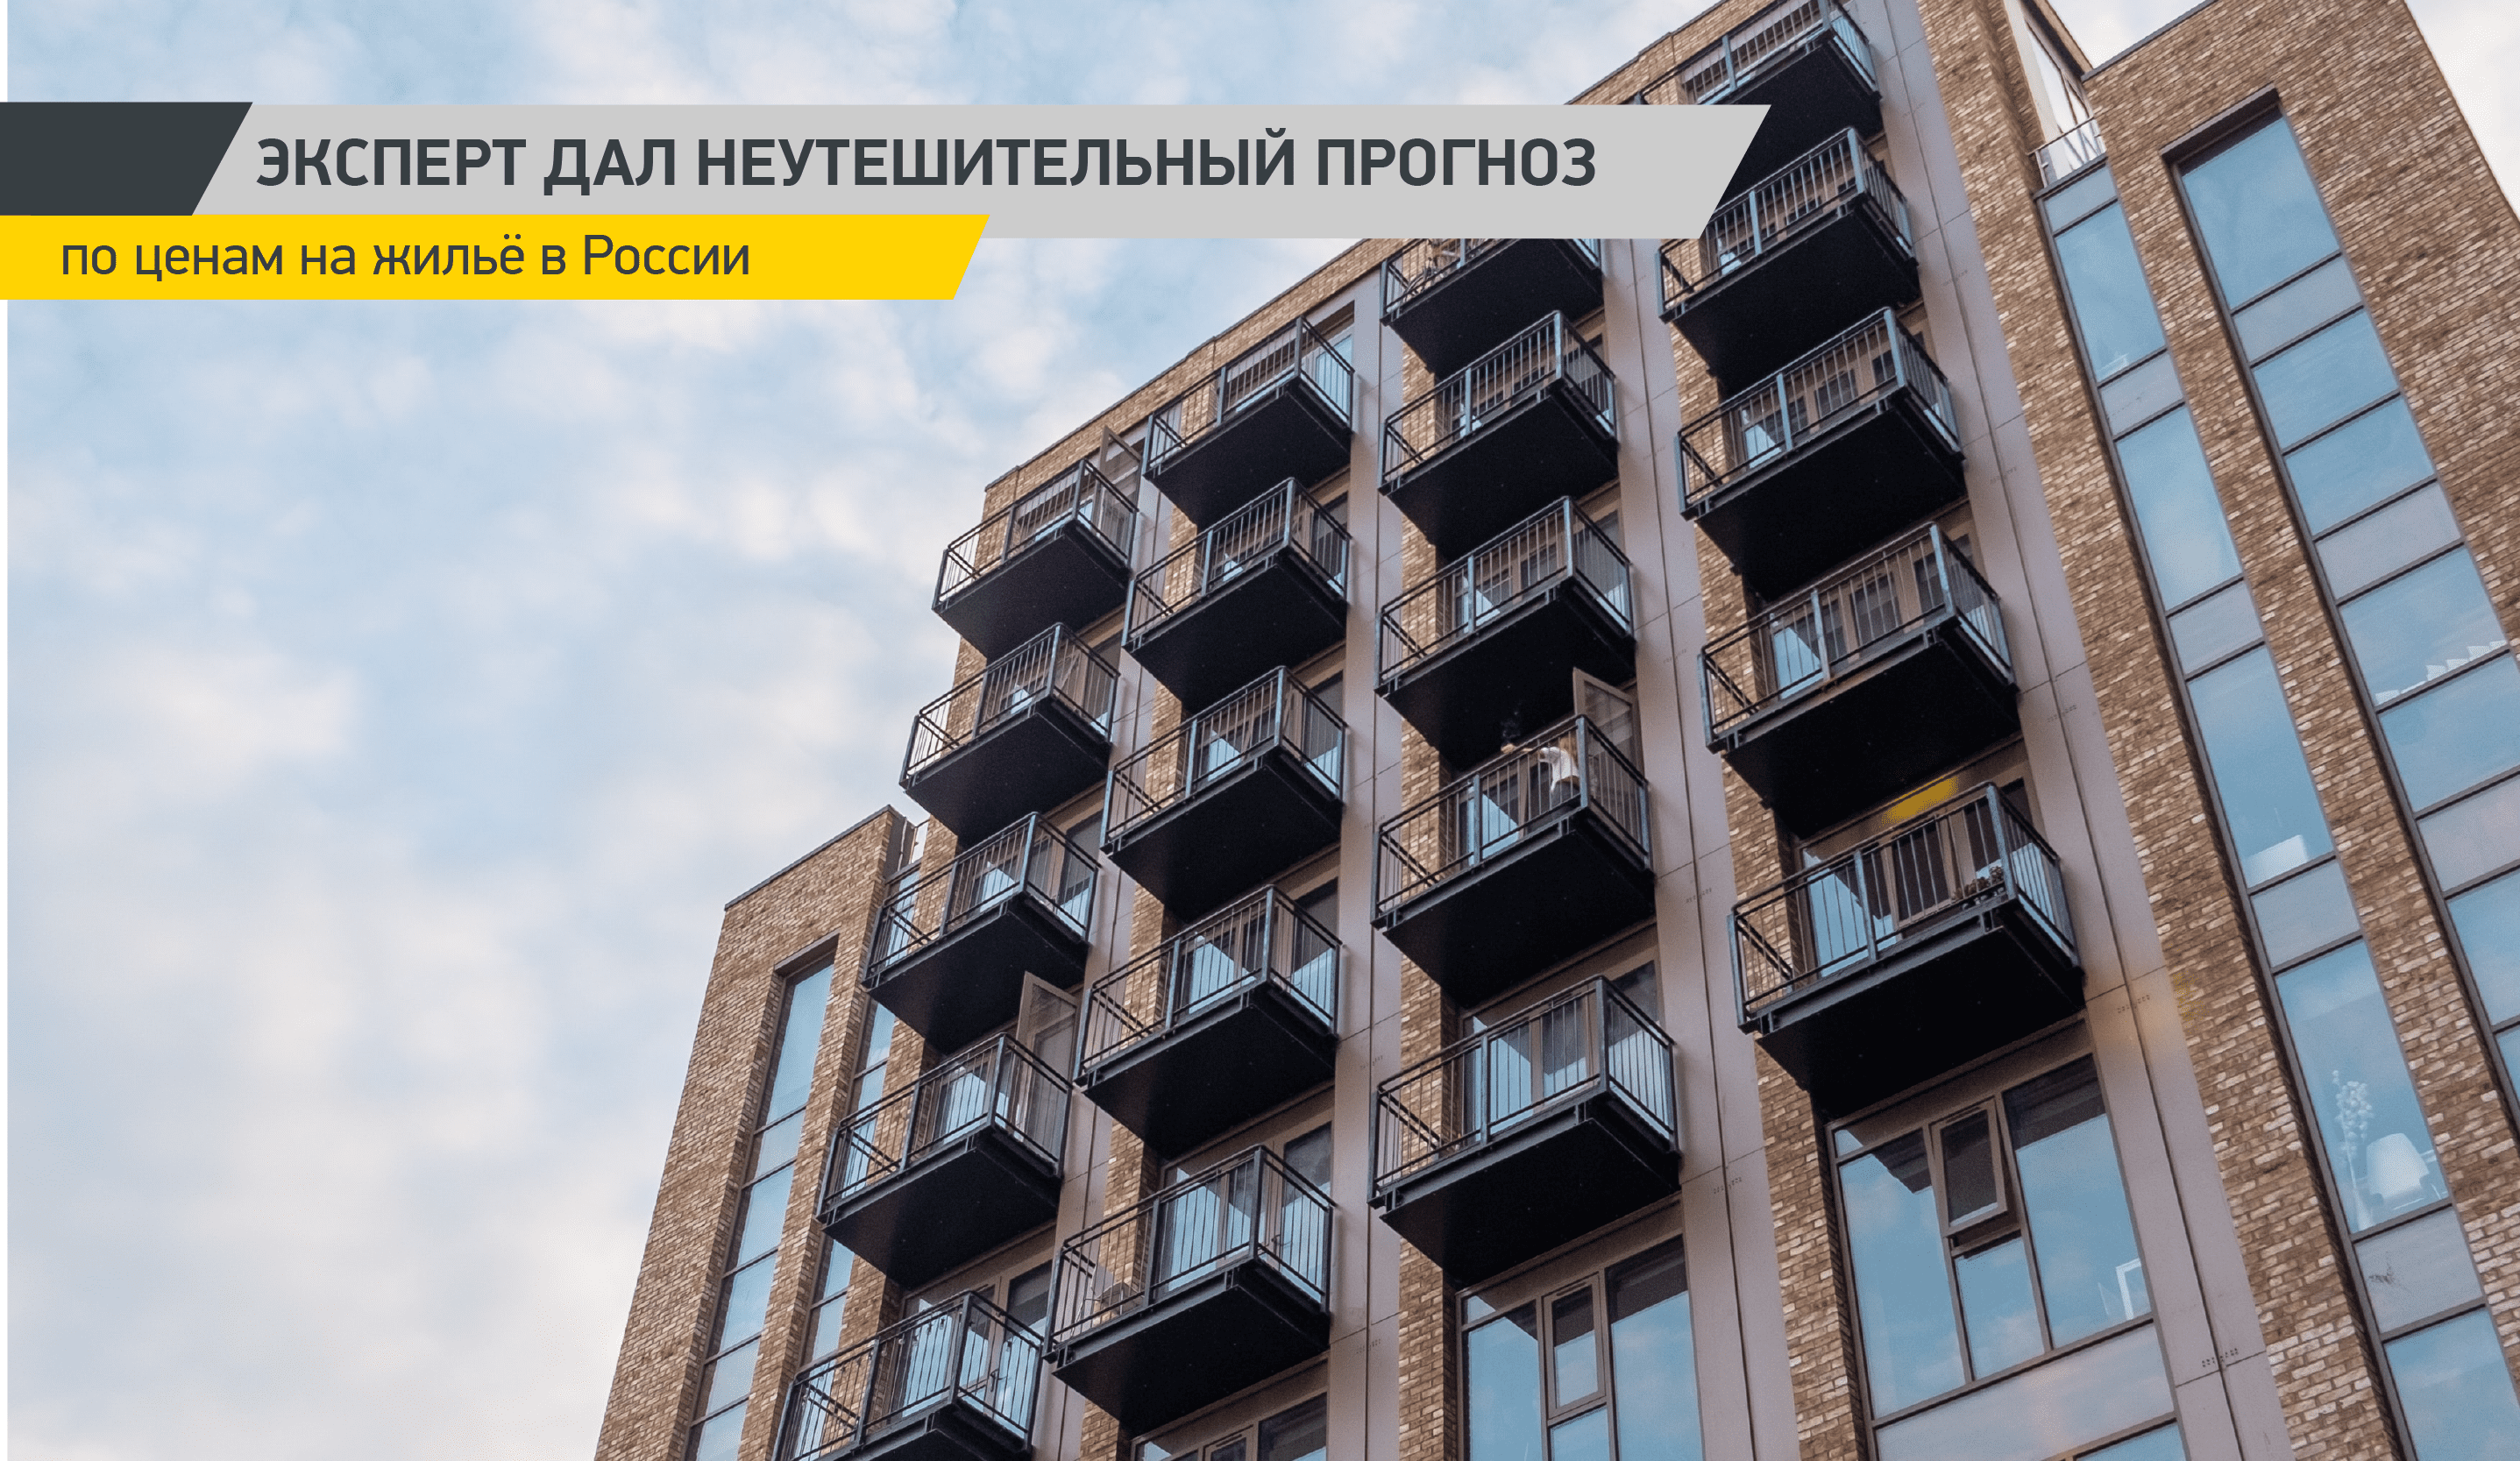 Эксперт дал неутешительный прогноз по ценам на жильё в России